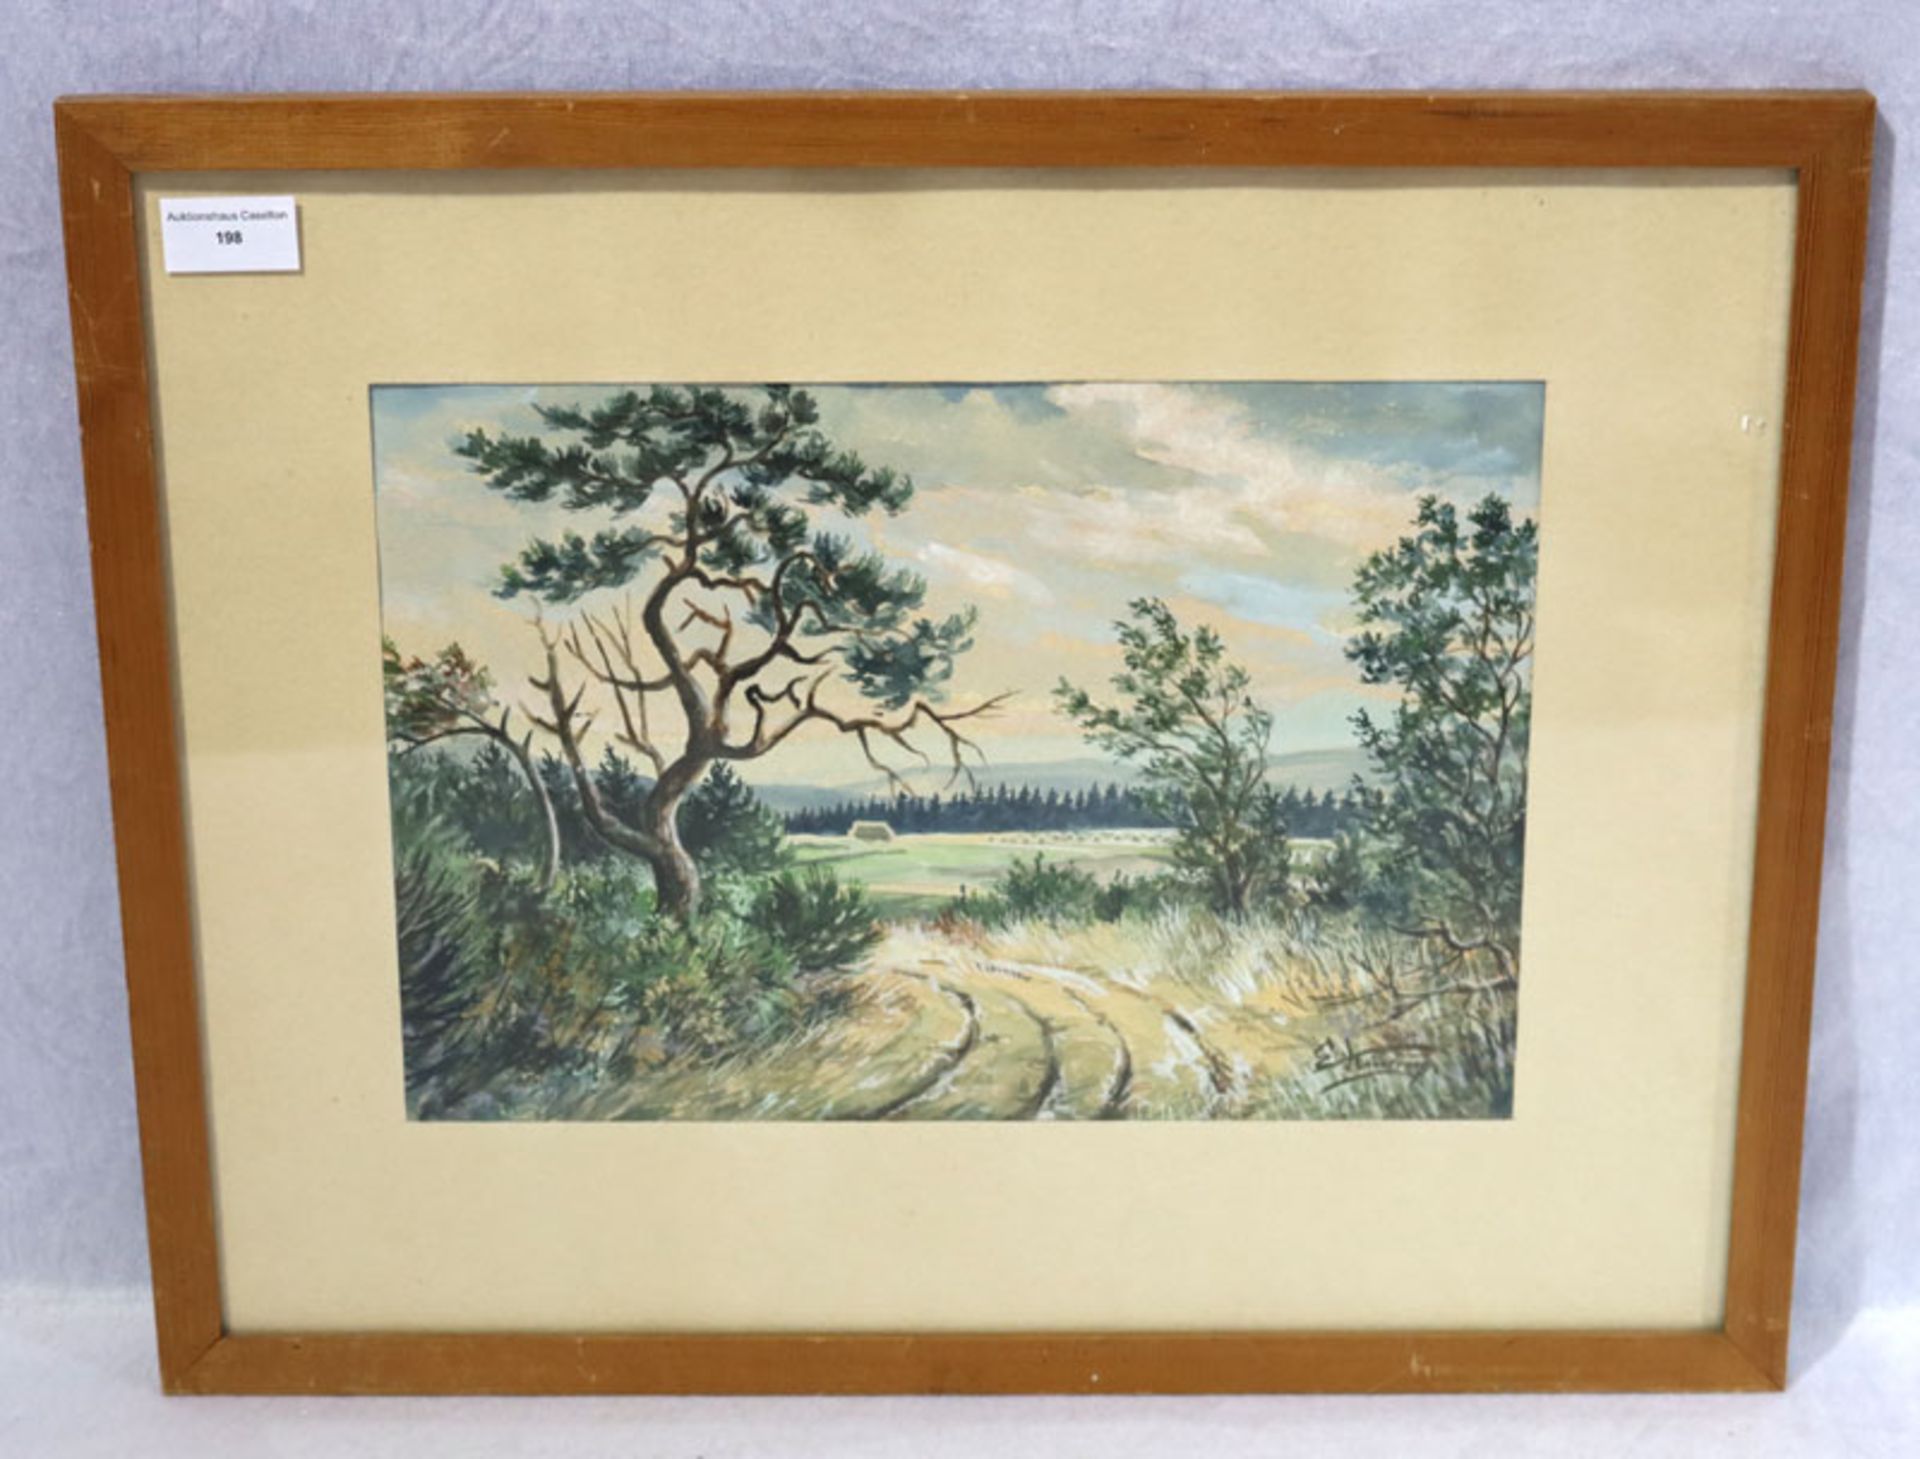 Aquarell 'Landschafts-Szenerie', signiert E. Kintrup, Eduard Kintrup, * 1896 Dortmund + 1959 Bonn,